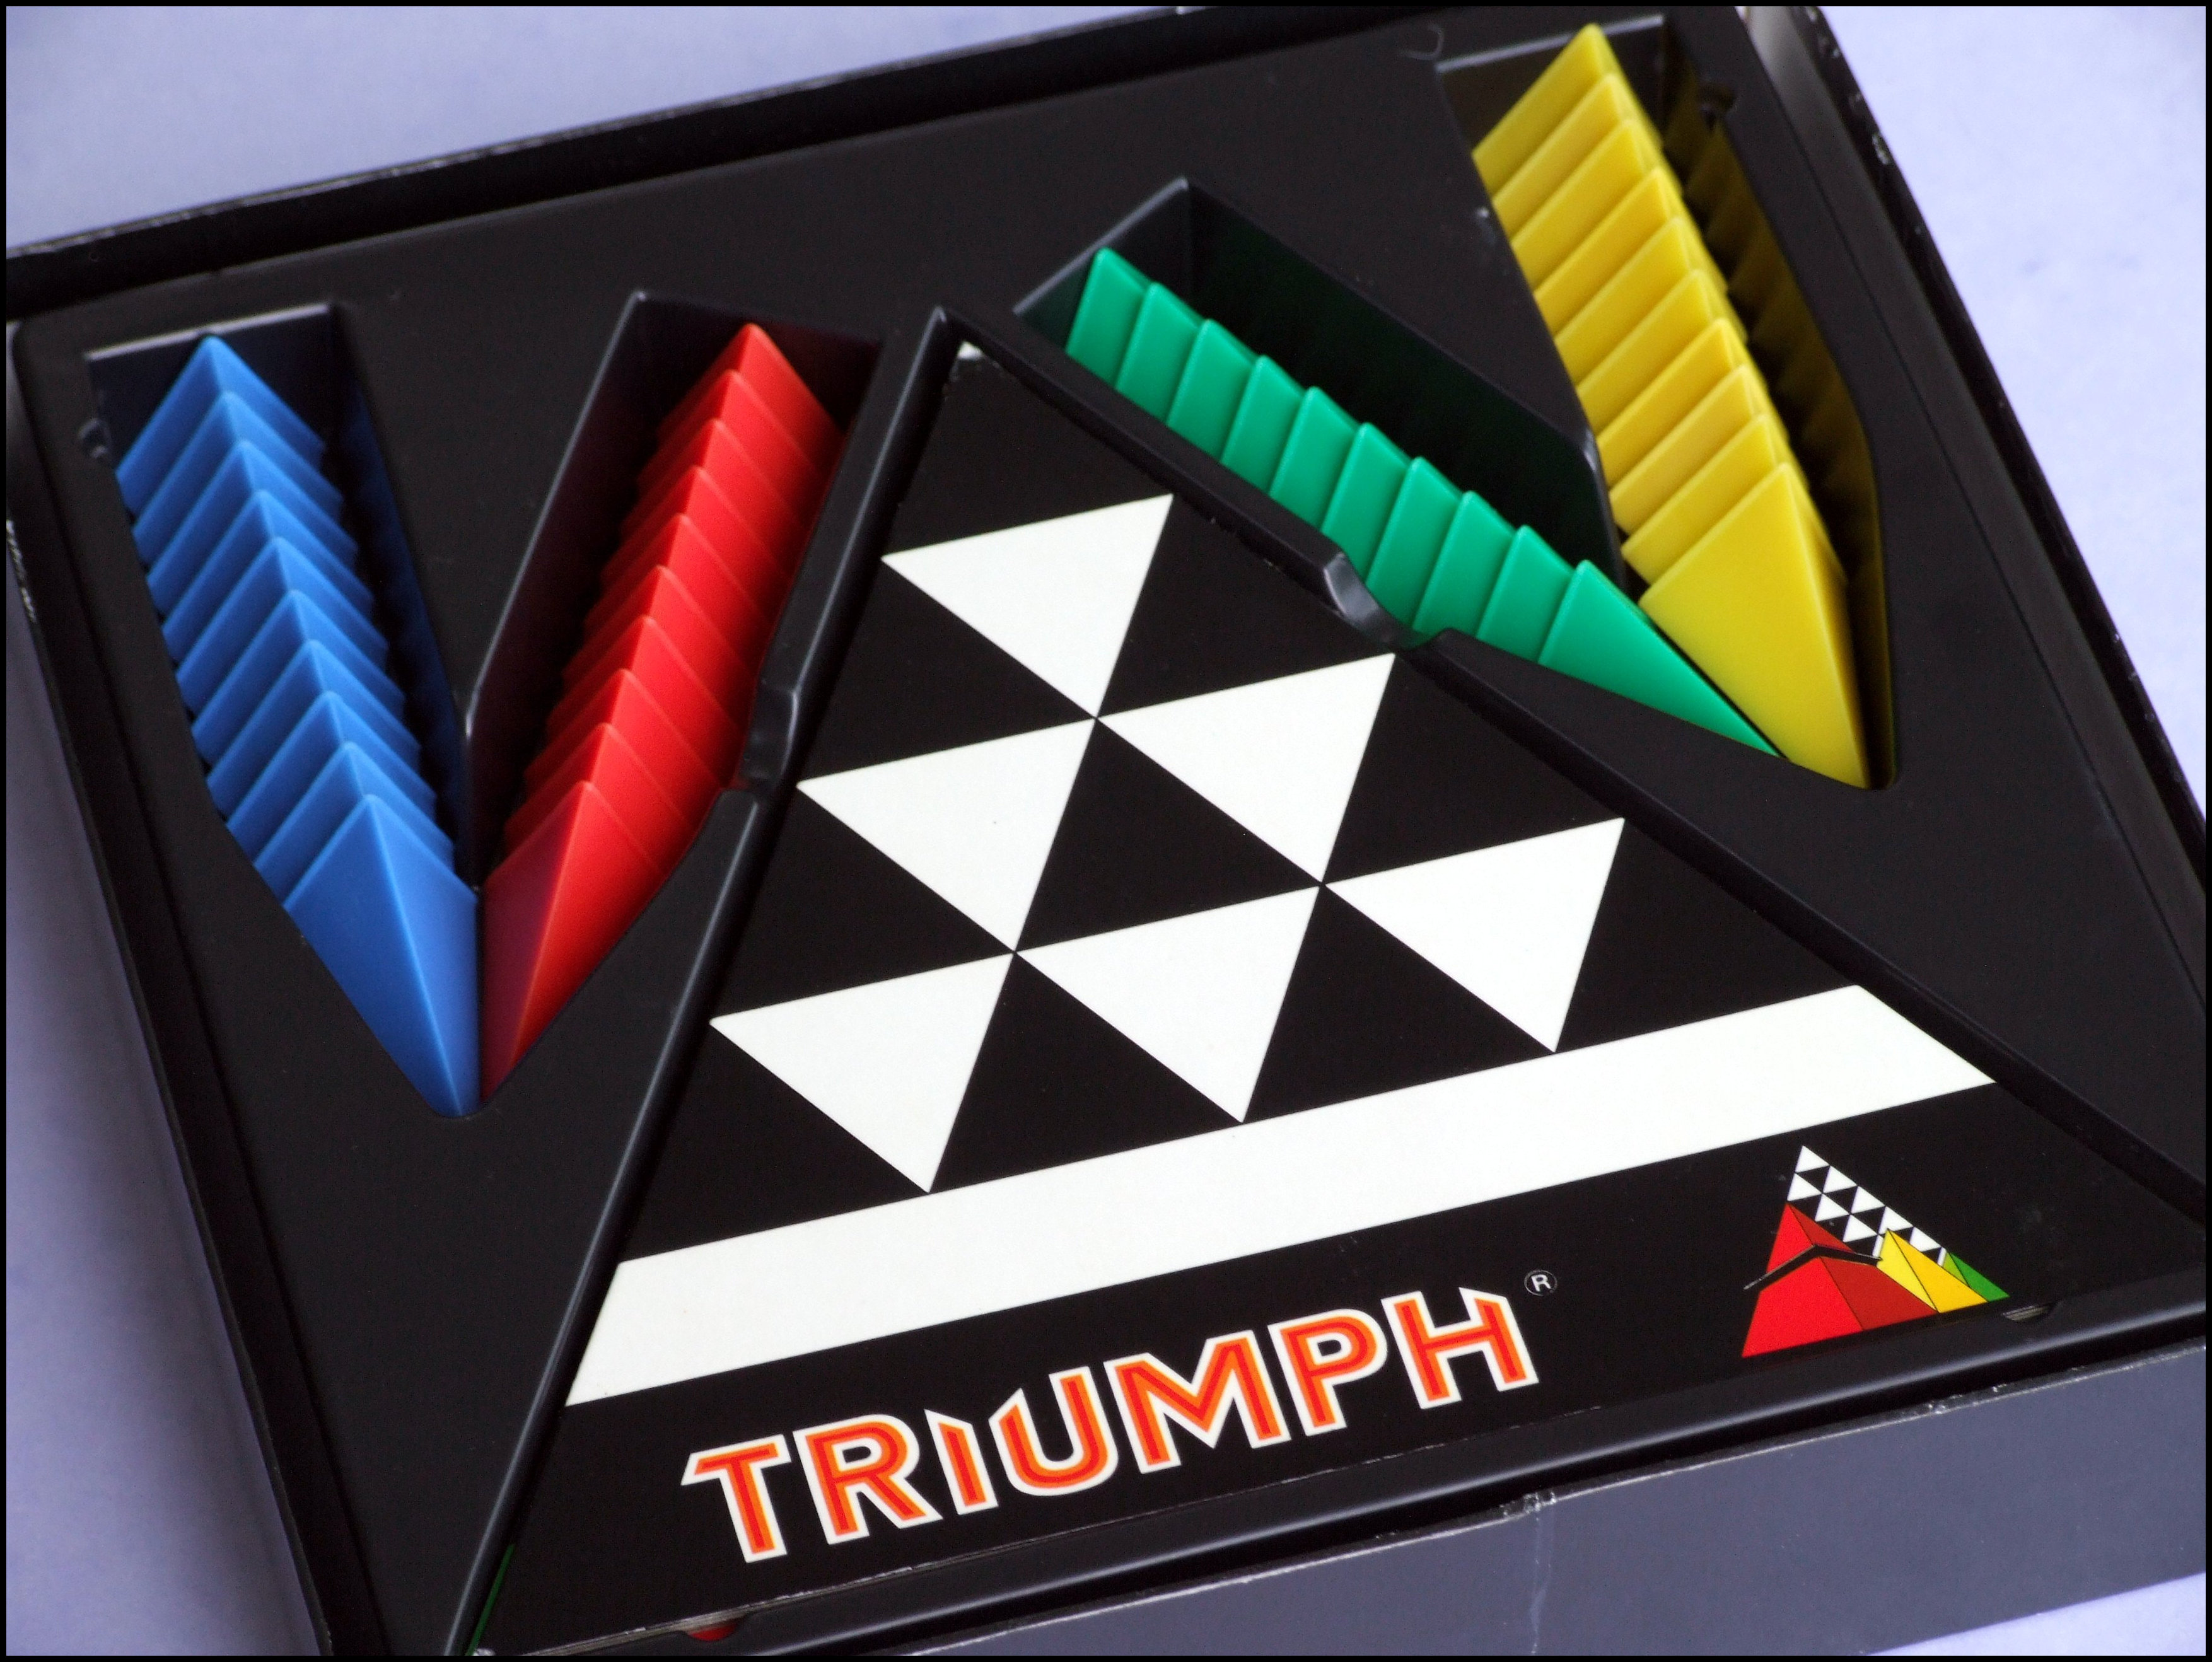 Triumph - The Box Contents